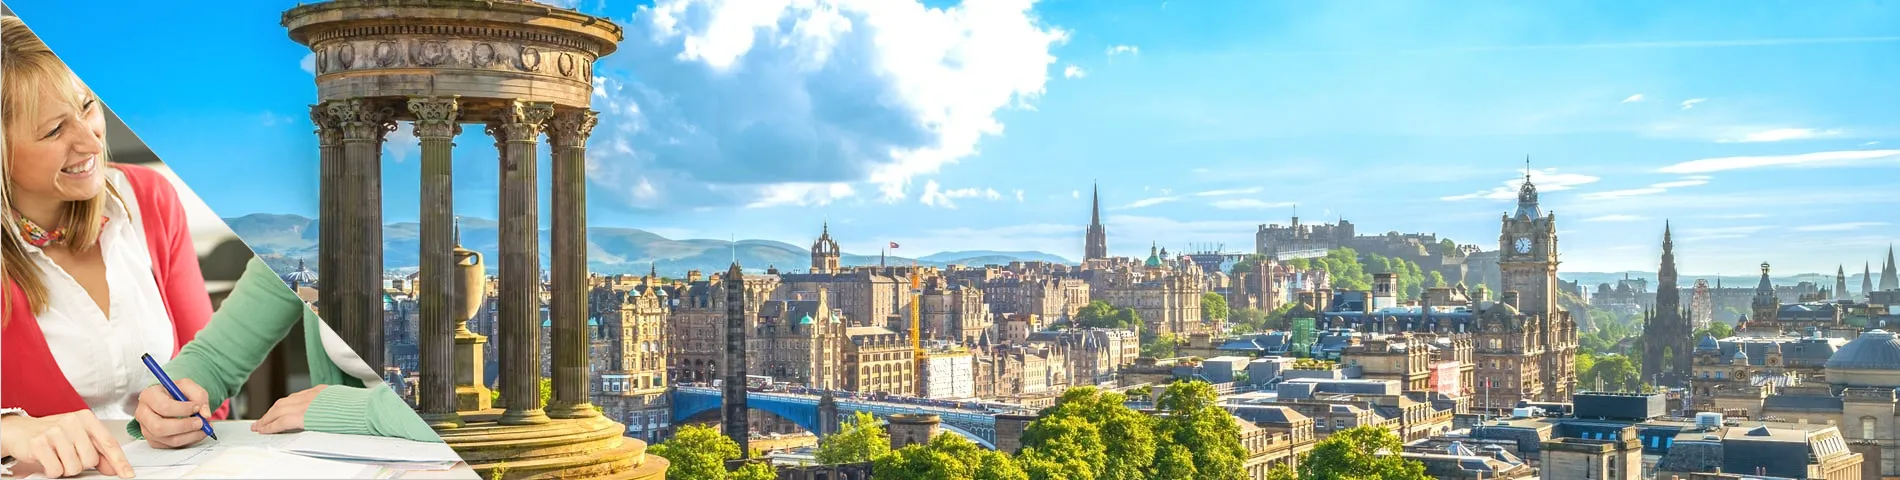 Edimburgo - Studia e Vivi a Casa del tuo Professore